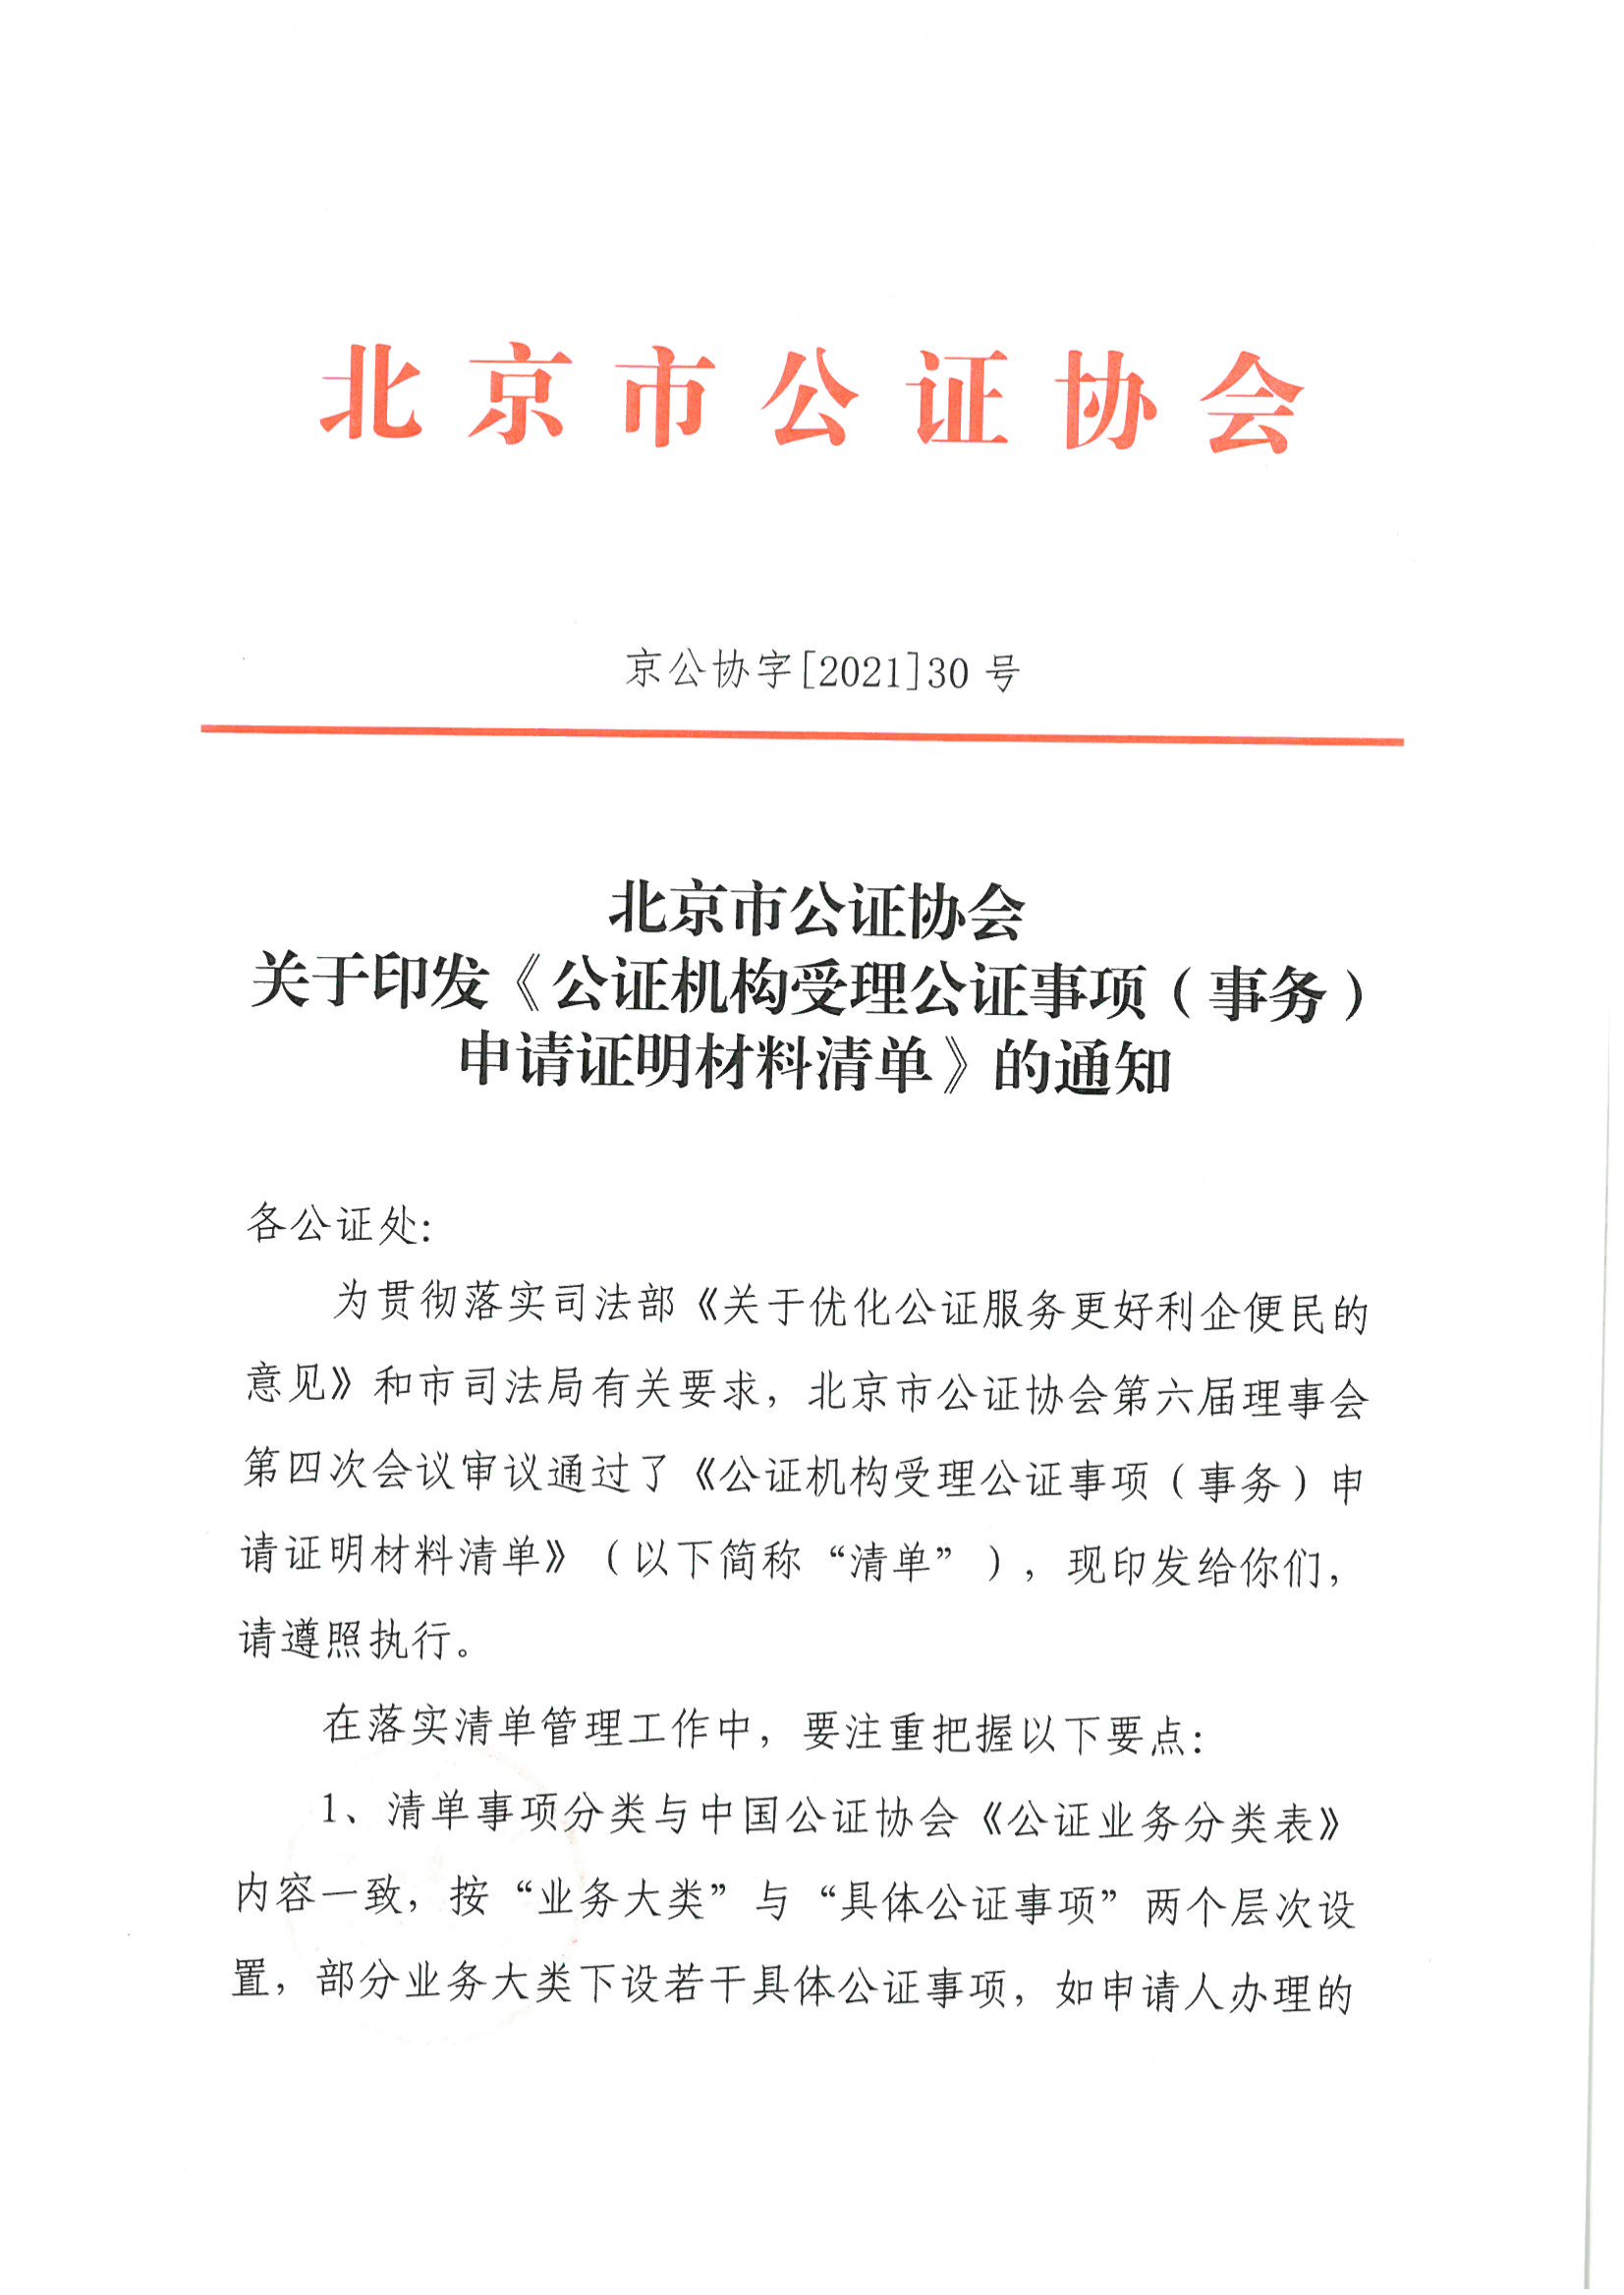 京公协字【2021】30号 北京市公证协会关于印发《公证机构受理公证事项（事务）申请证明材料清单》的通知_88